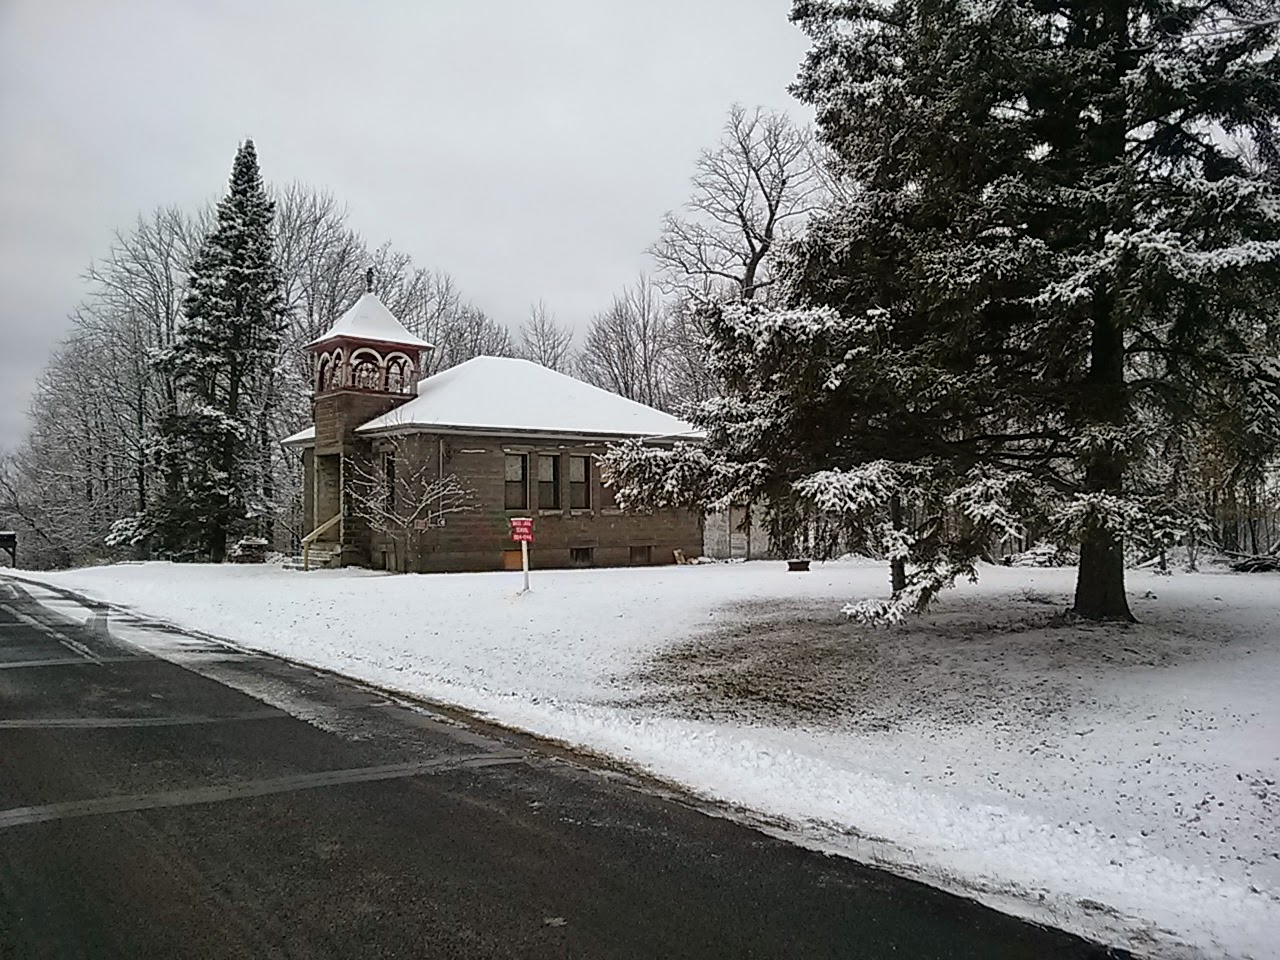 Snow on the schoolhouse